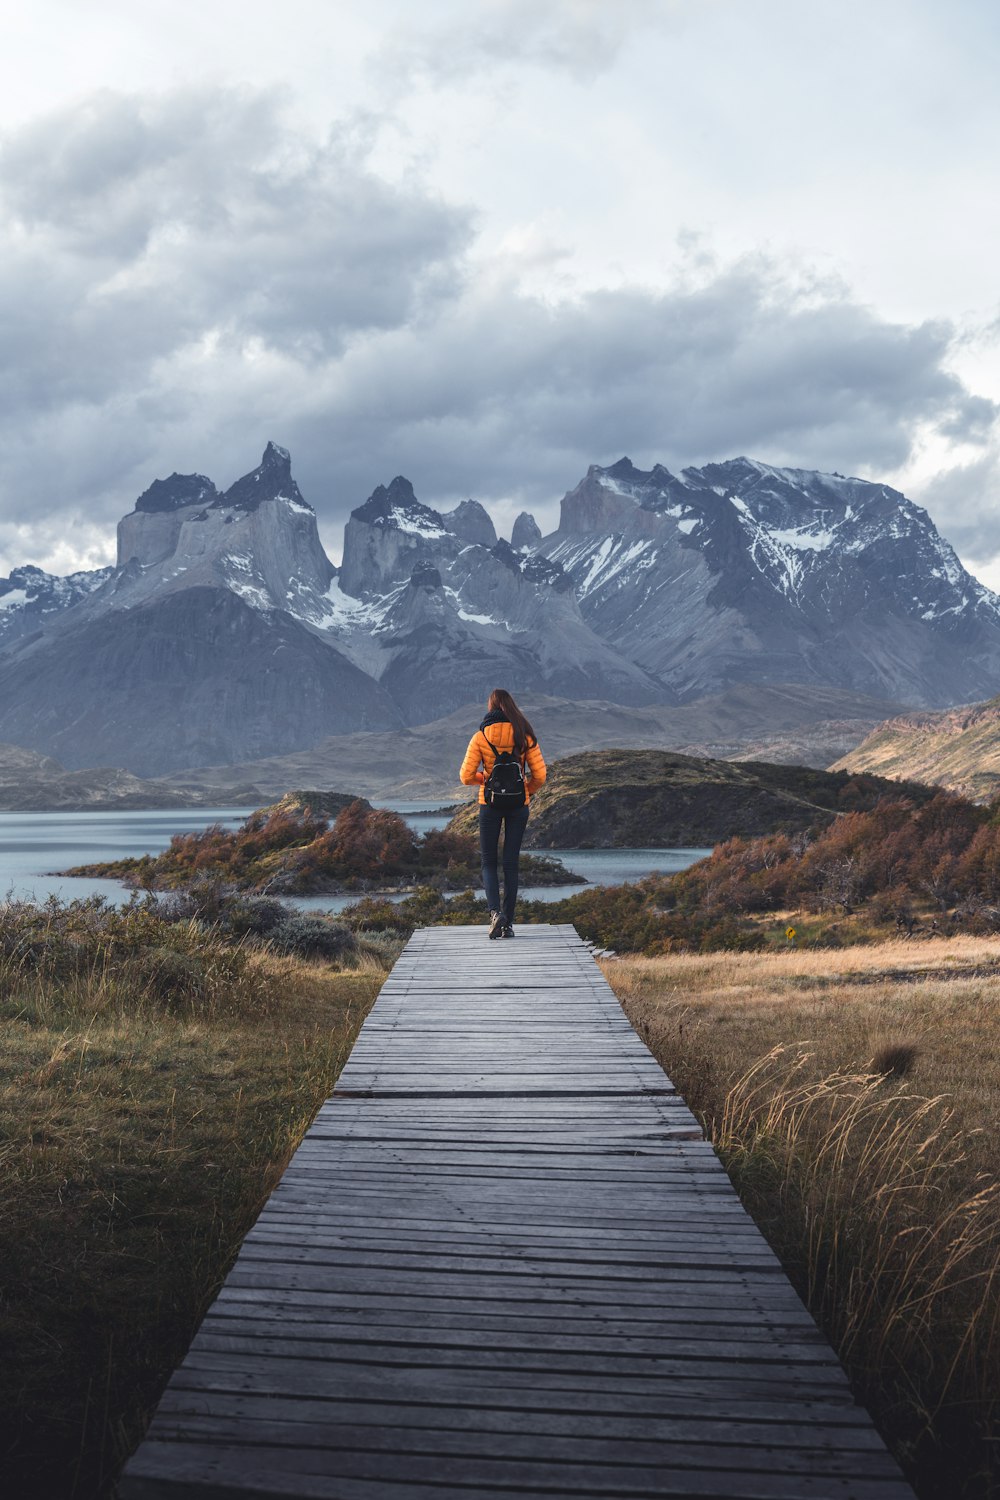 Una persona caminando por una pasarela de madera hacia las montañas